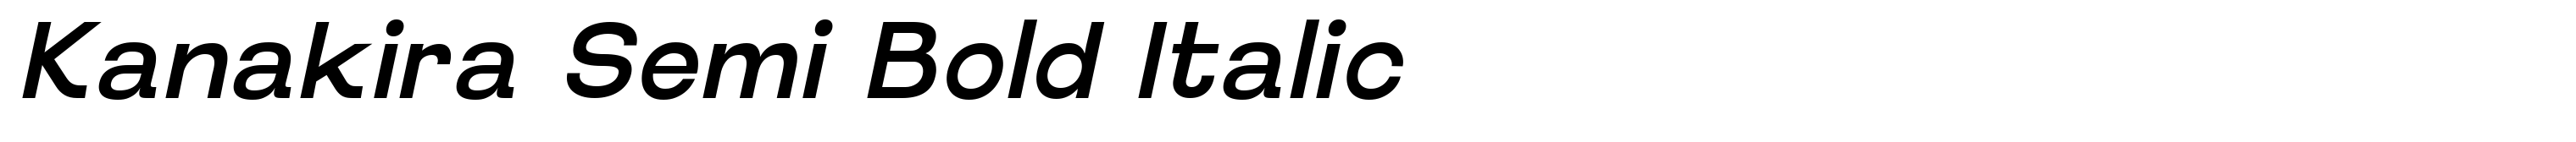 Kanakira Semi Bold Italic